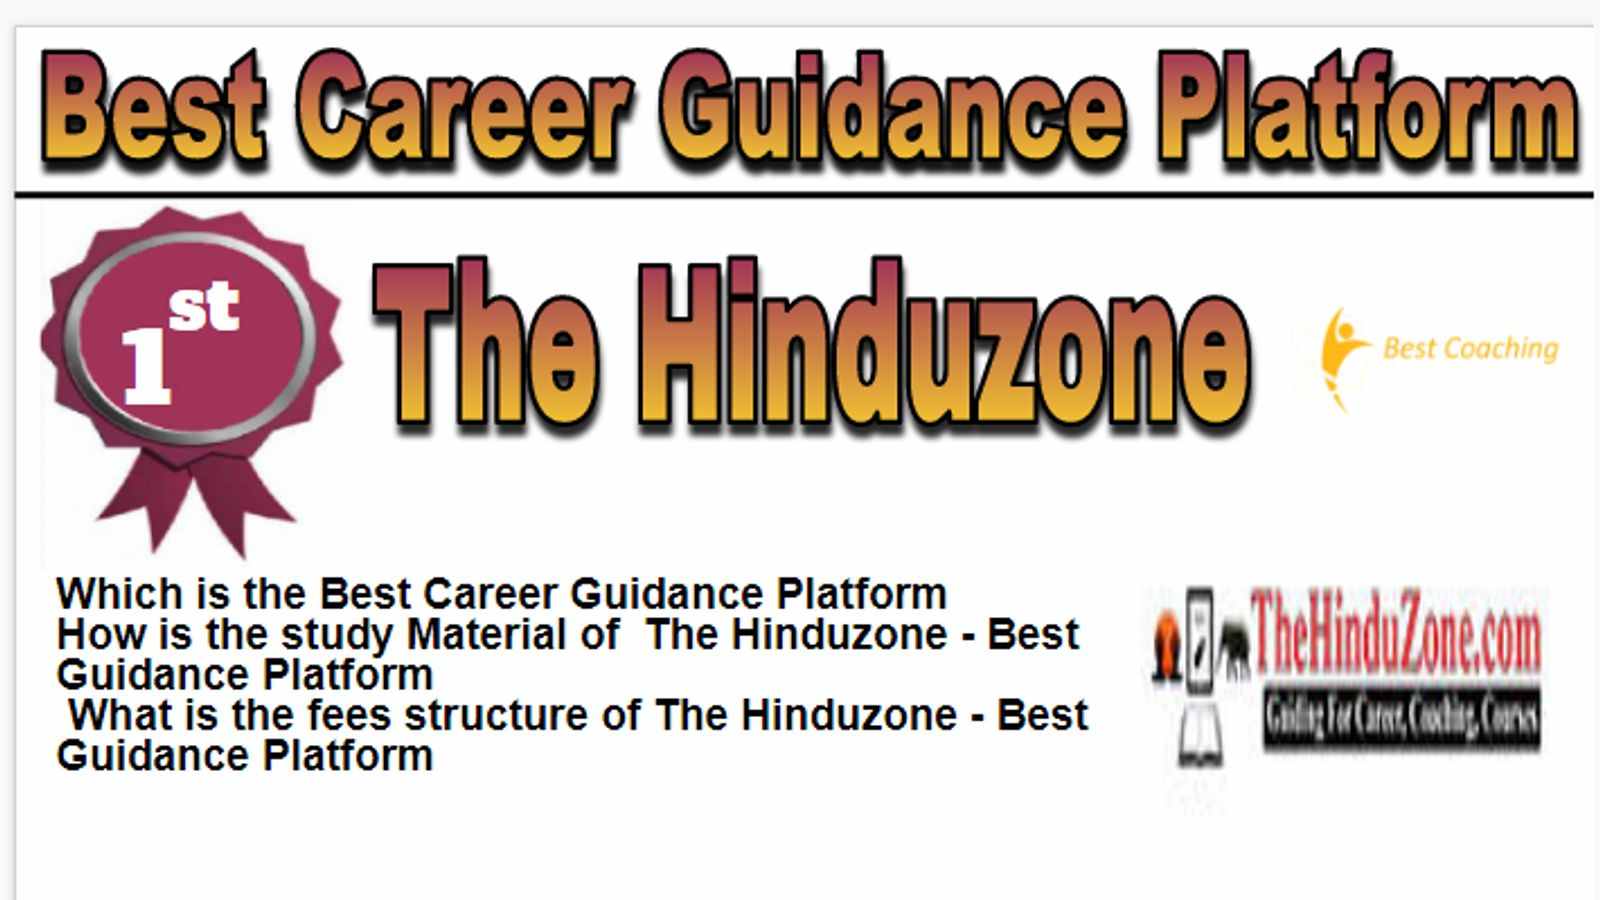 Rank 1 Best Career Guidance Platform